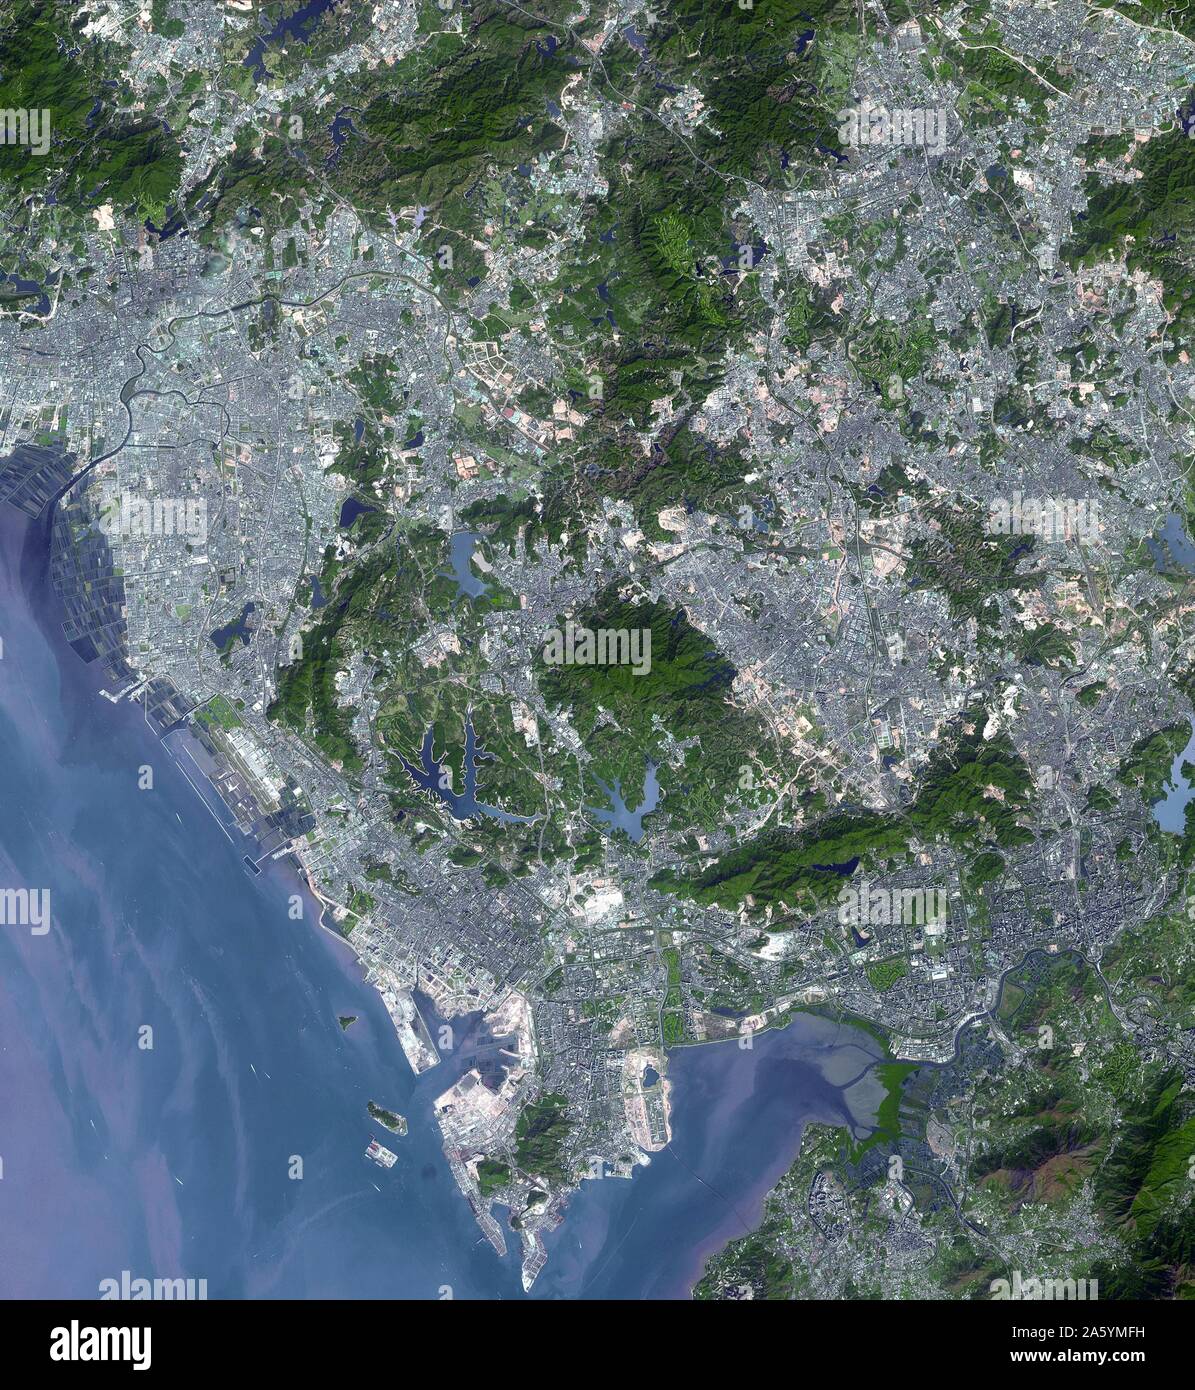 Shenzhen è una città di sub-provinciale lo stato amministrativo in Cina meridionale della provincia di Guangdong, immediatamente a nord di Hong Kong, e situato nel Delta del Fiume Pearl. Prove di urbanizzazione è evidente in queste due immagini. Il 15 novembre 1999 e il 1 gennaio 2008. Immagine satellitare. Foto Stock